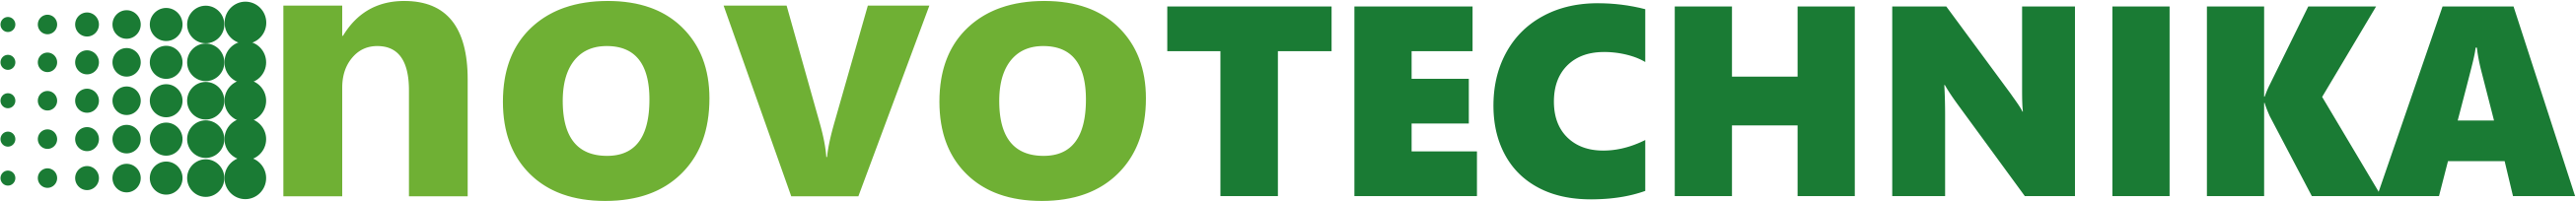 Novotechnika logo 